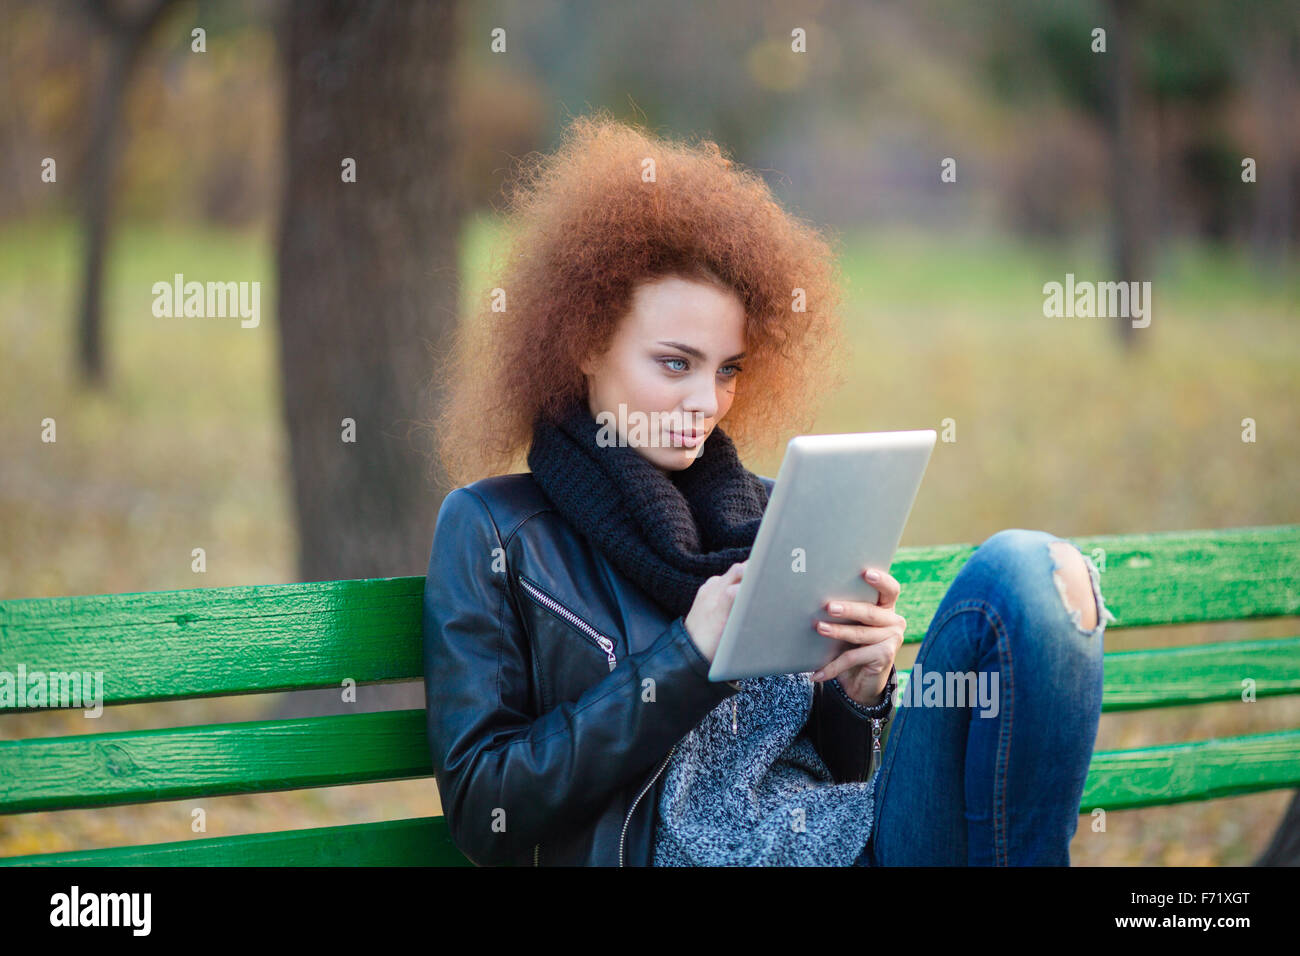 Portrait d'une belle femme avec des cheveux bouclés assis sur le banc et using tablet computer in autumn park Banque D'Images